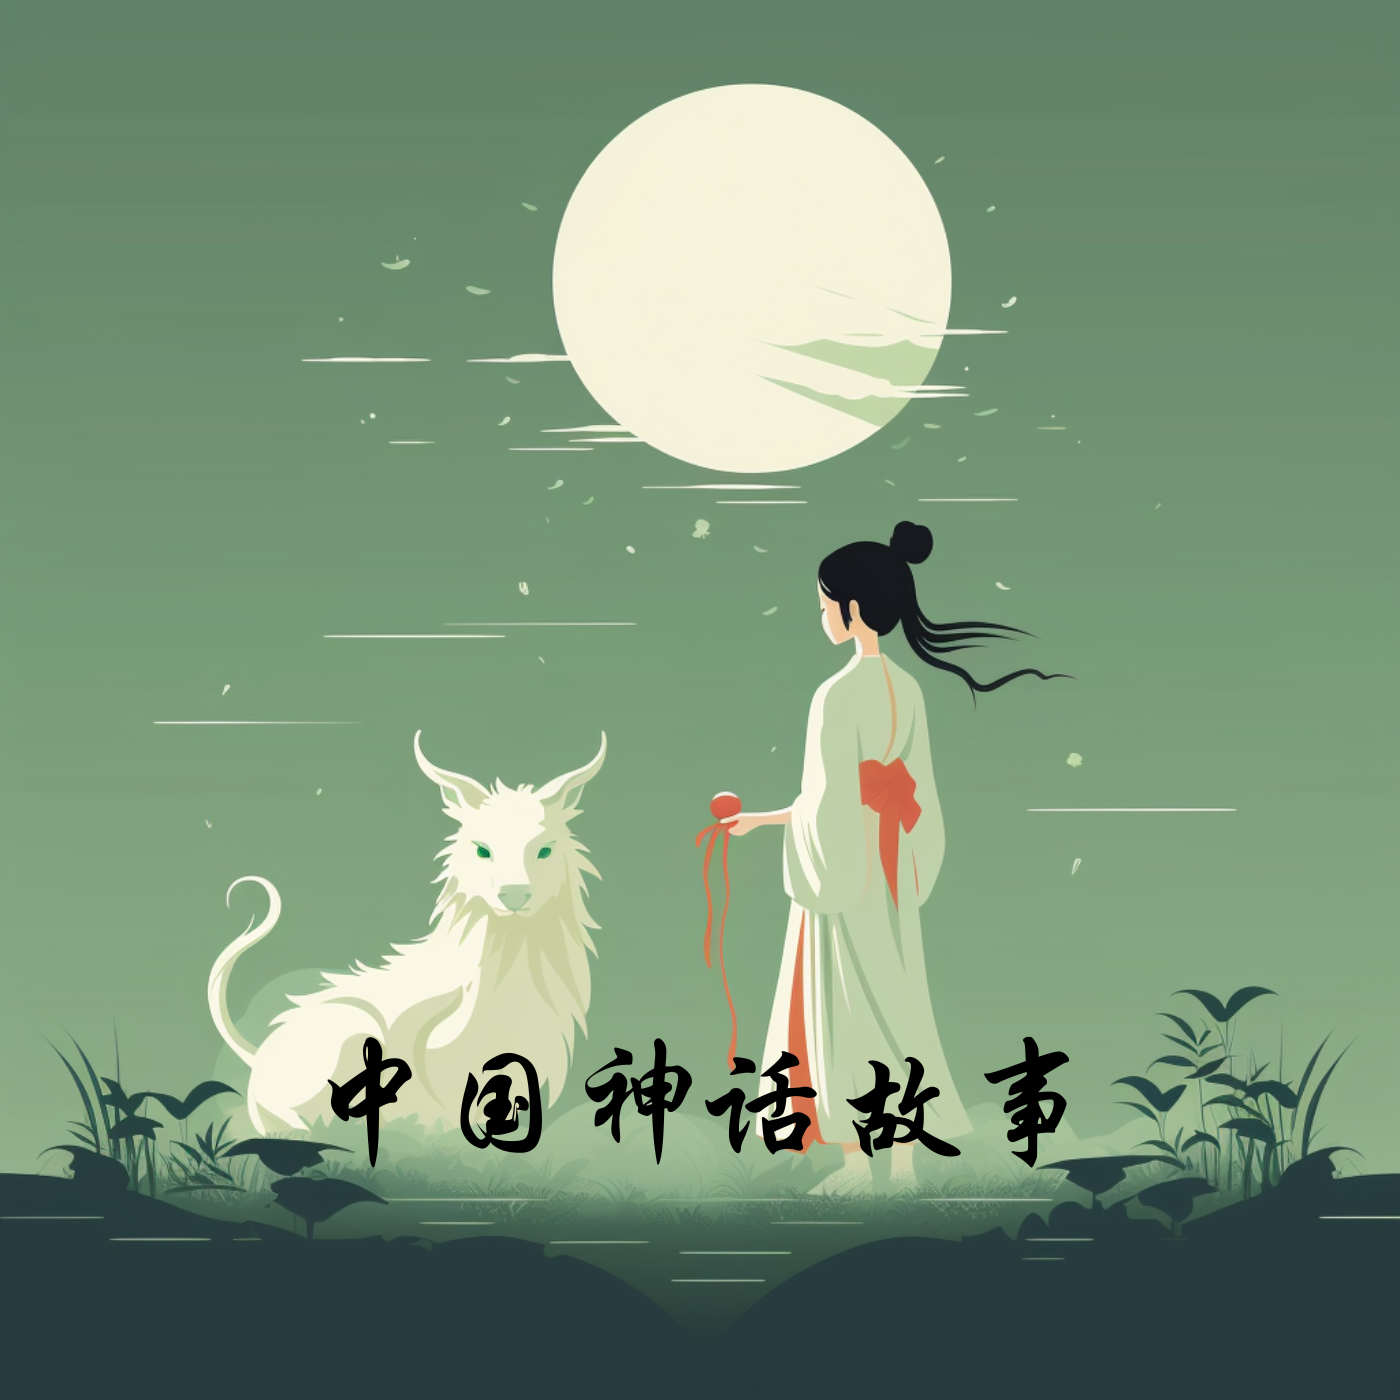 中国神话故事|星星姐姐晚安故事